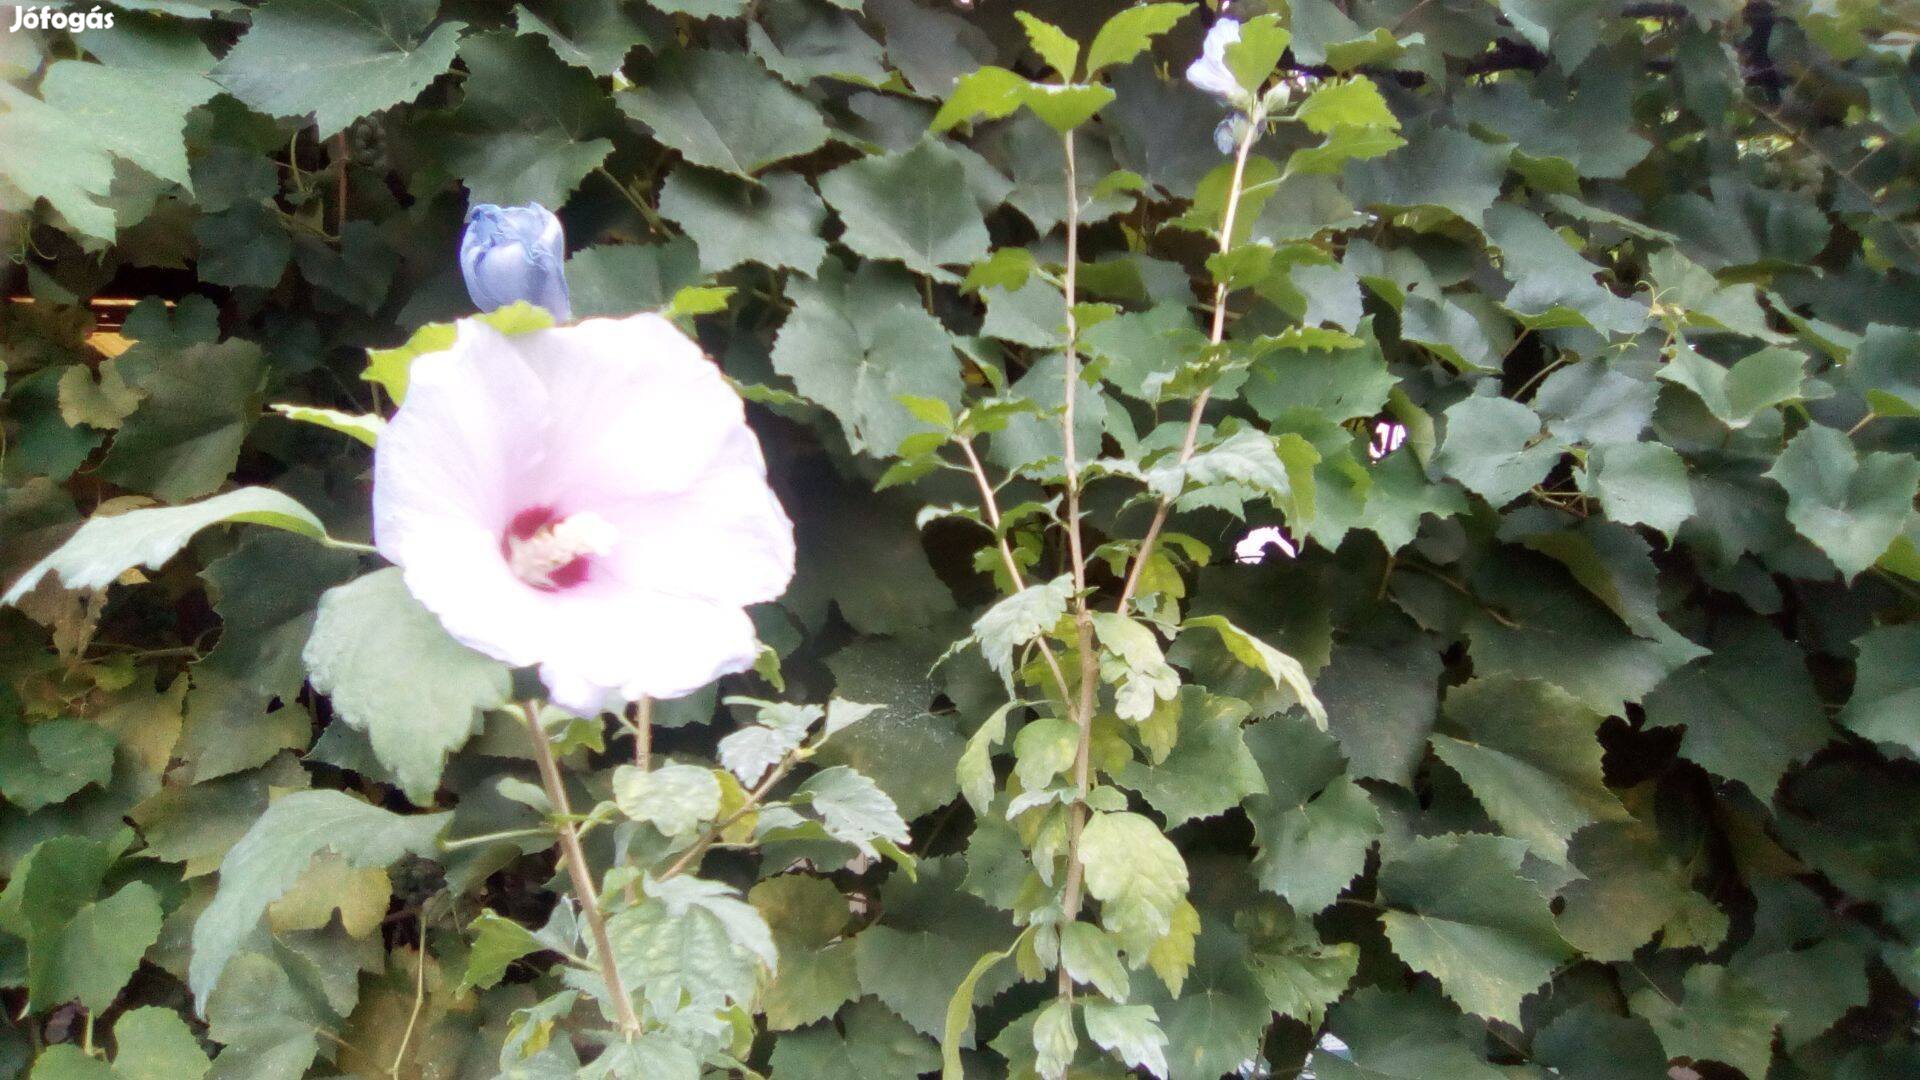 Syr hibiszkusz (mályvacserje) növények fehér és lila színben eladó!